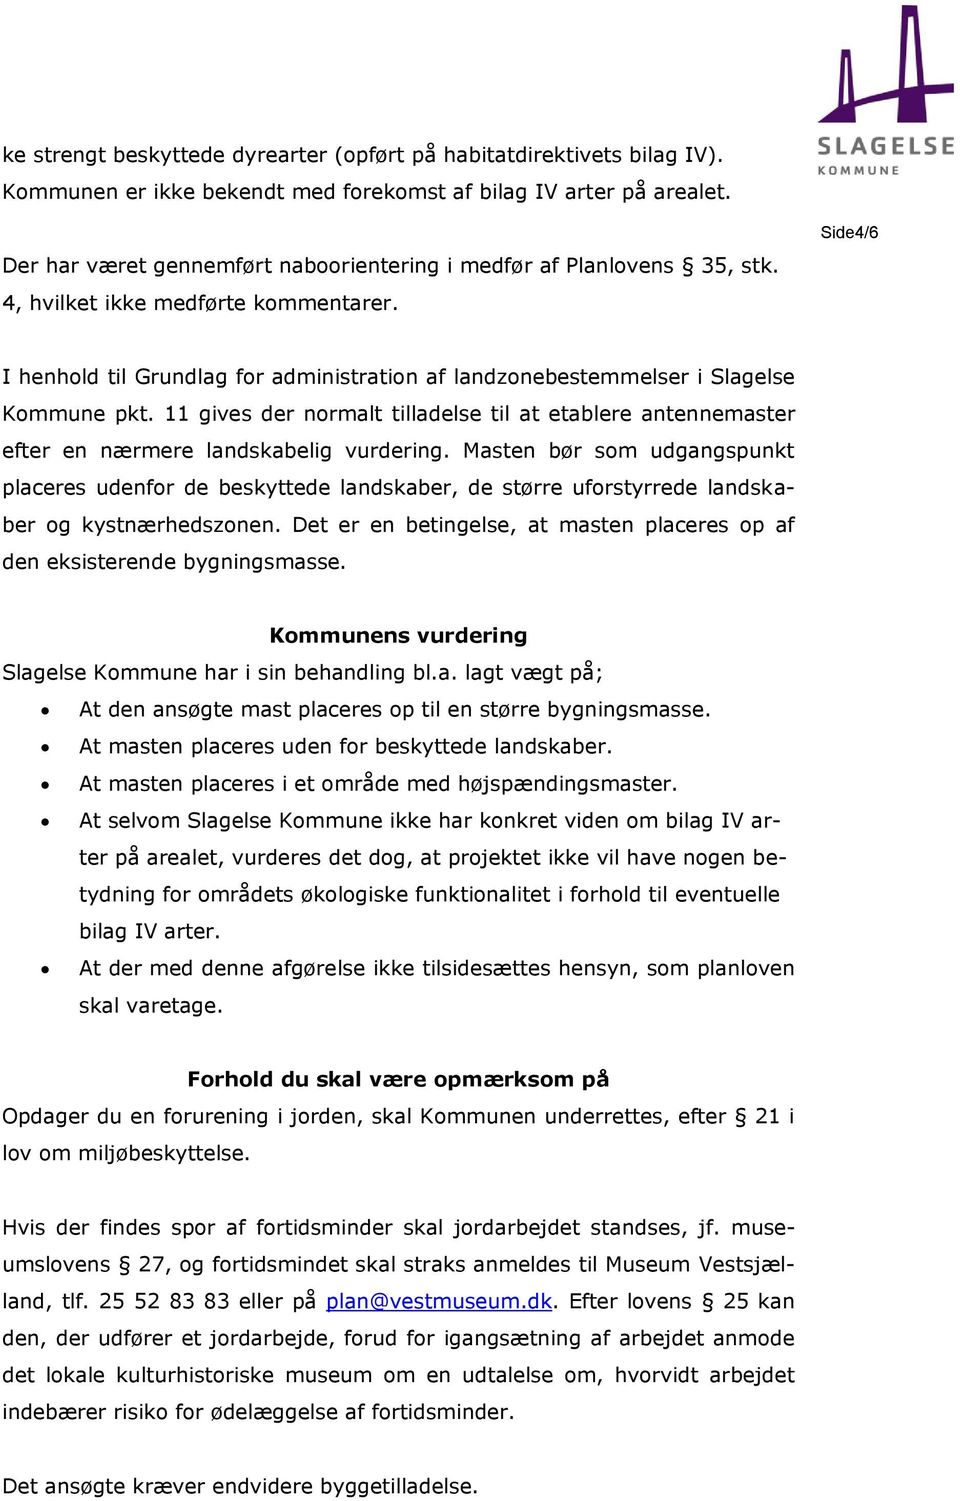 Side4/6 I henhold til Grundlag for administration af landzonebestemmelser i Slagelse Kommune pkt. 11 gives der normalt tilladelse til at etablere antennemaster efter en nærmere landskabelig vurdering.